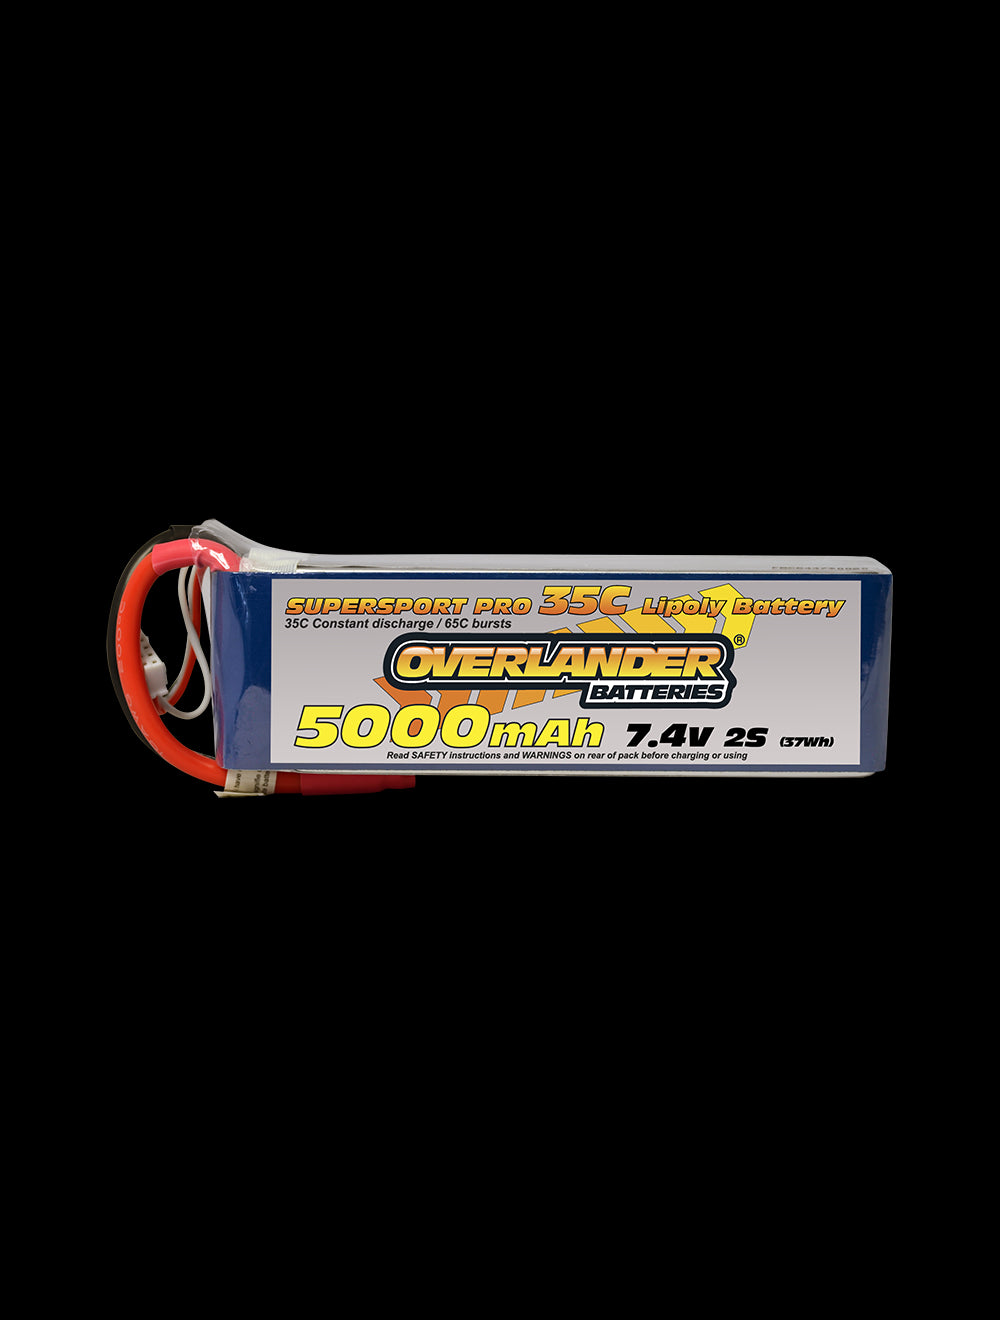 Overlander 5000mAh 7.4V 2S 35C Supersport Pro LiPo Battery - XT60 Connector 2576